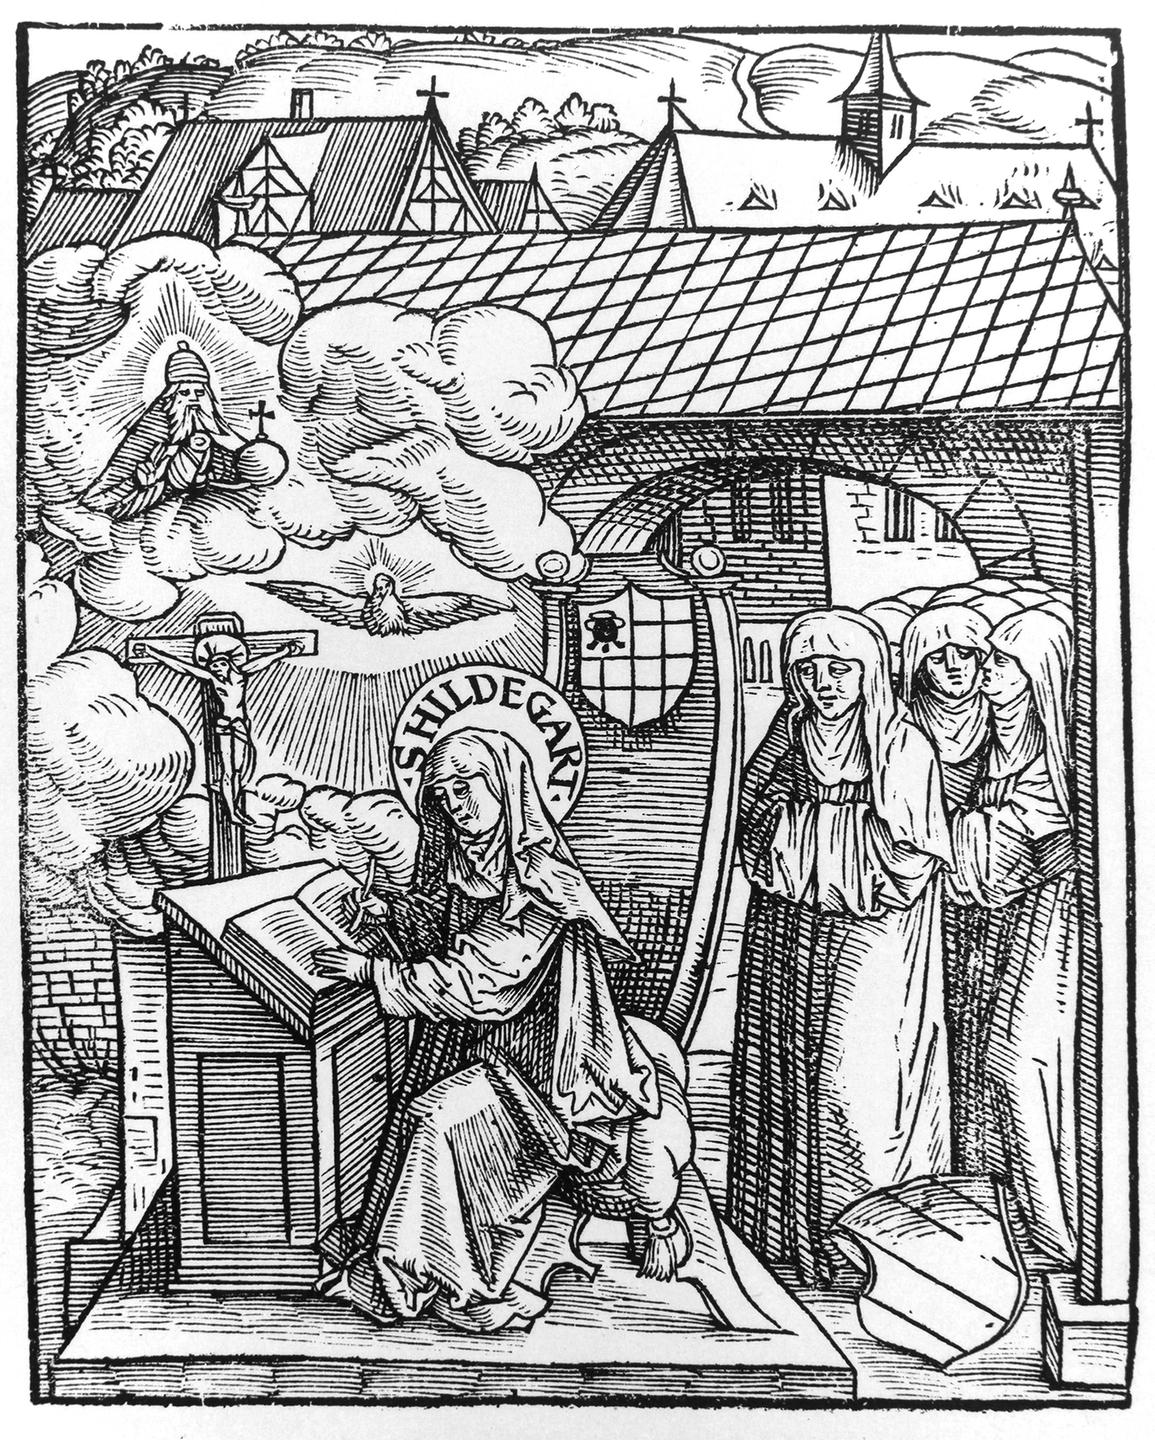 Holzschnitt von Hildegard von Bingen. Eine Nonne sitzt an einem Tisch und schreibt und wird dabei von anderen Nonnen beobachtet. 